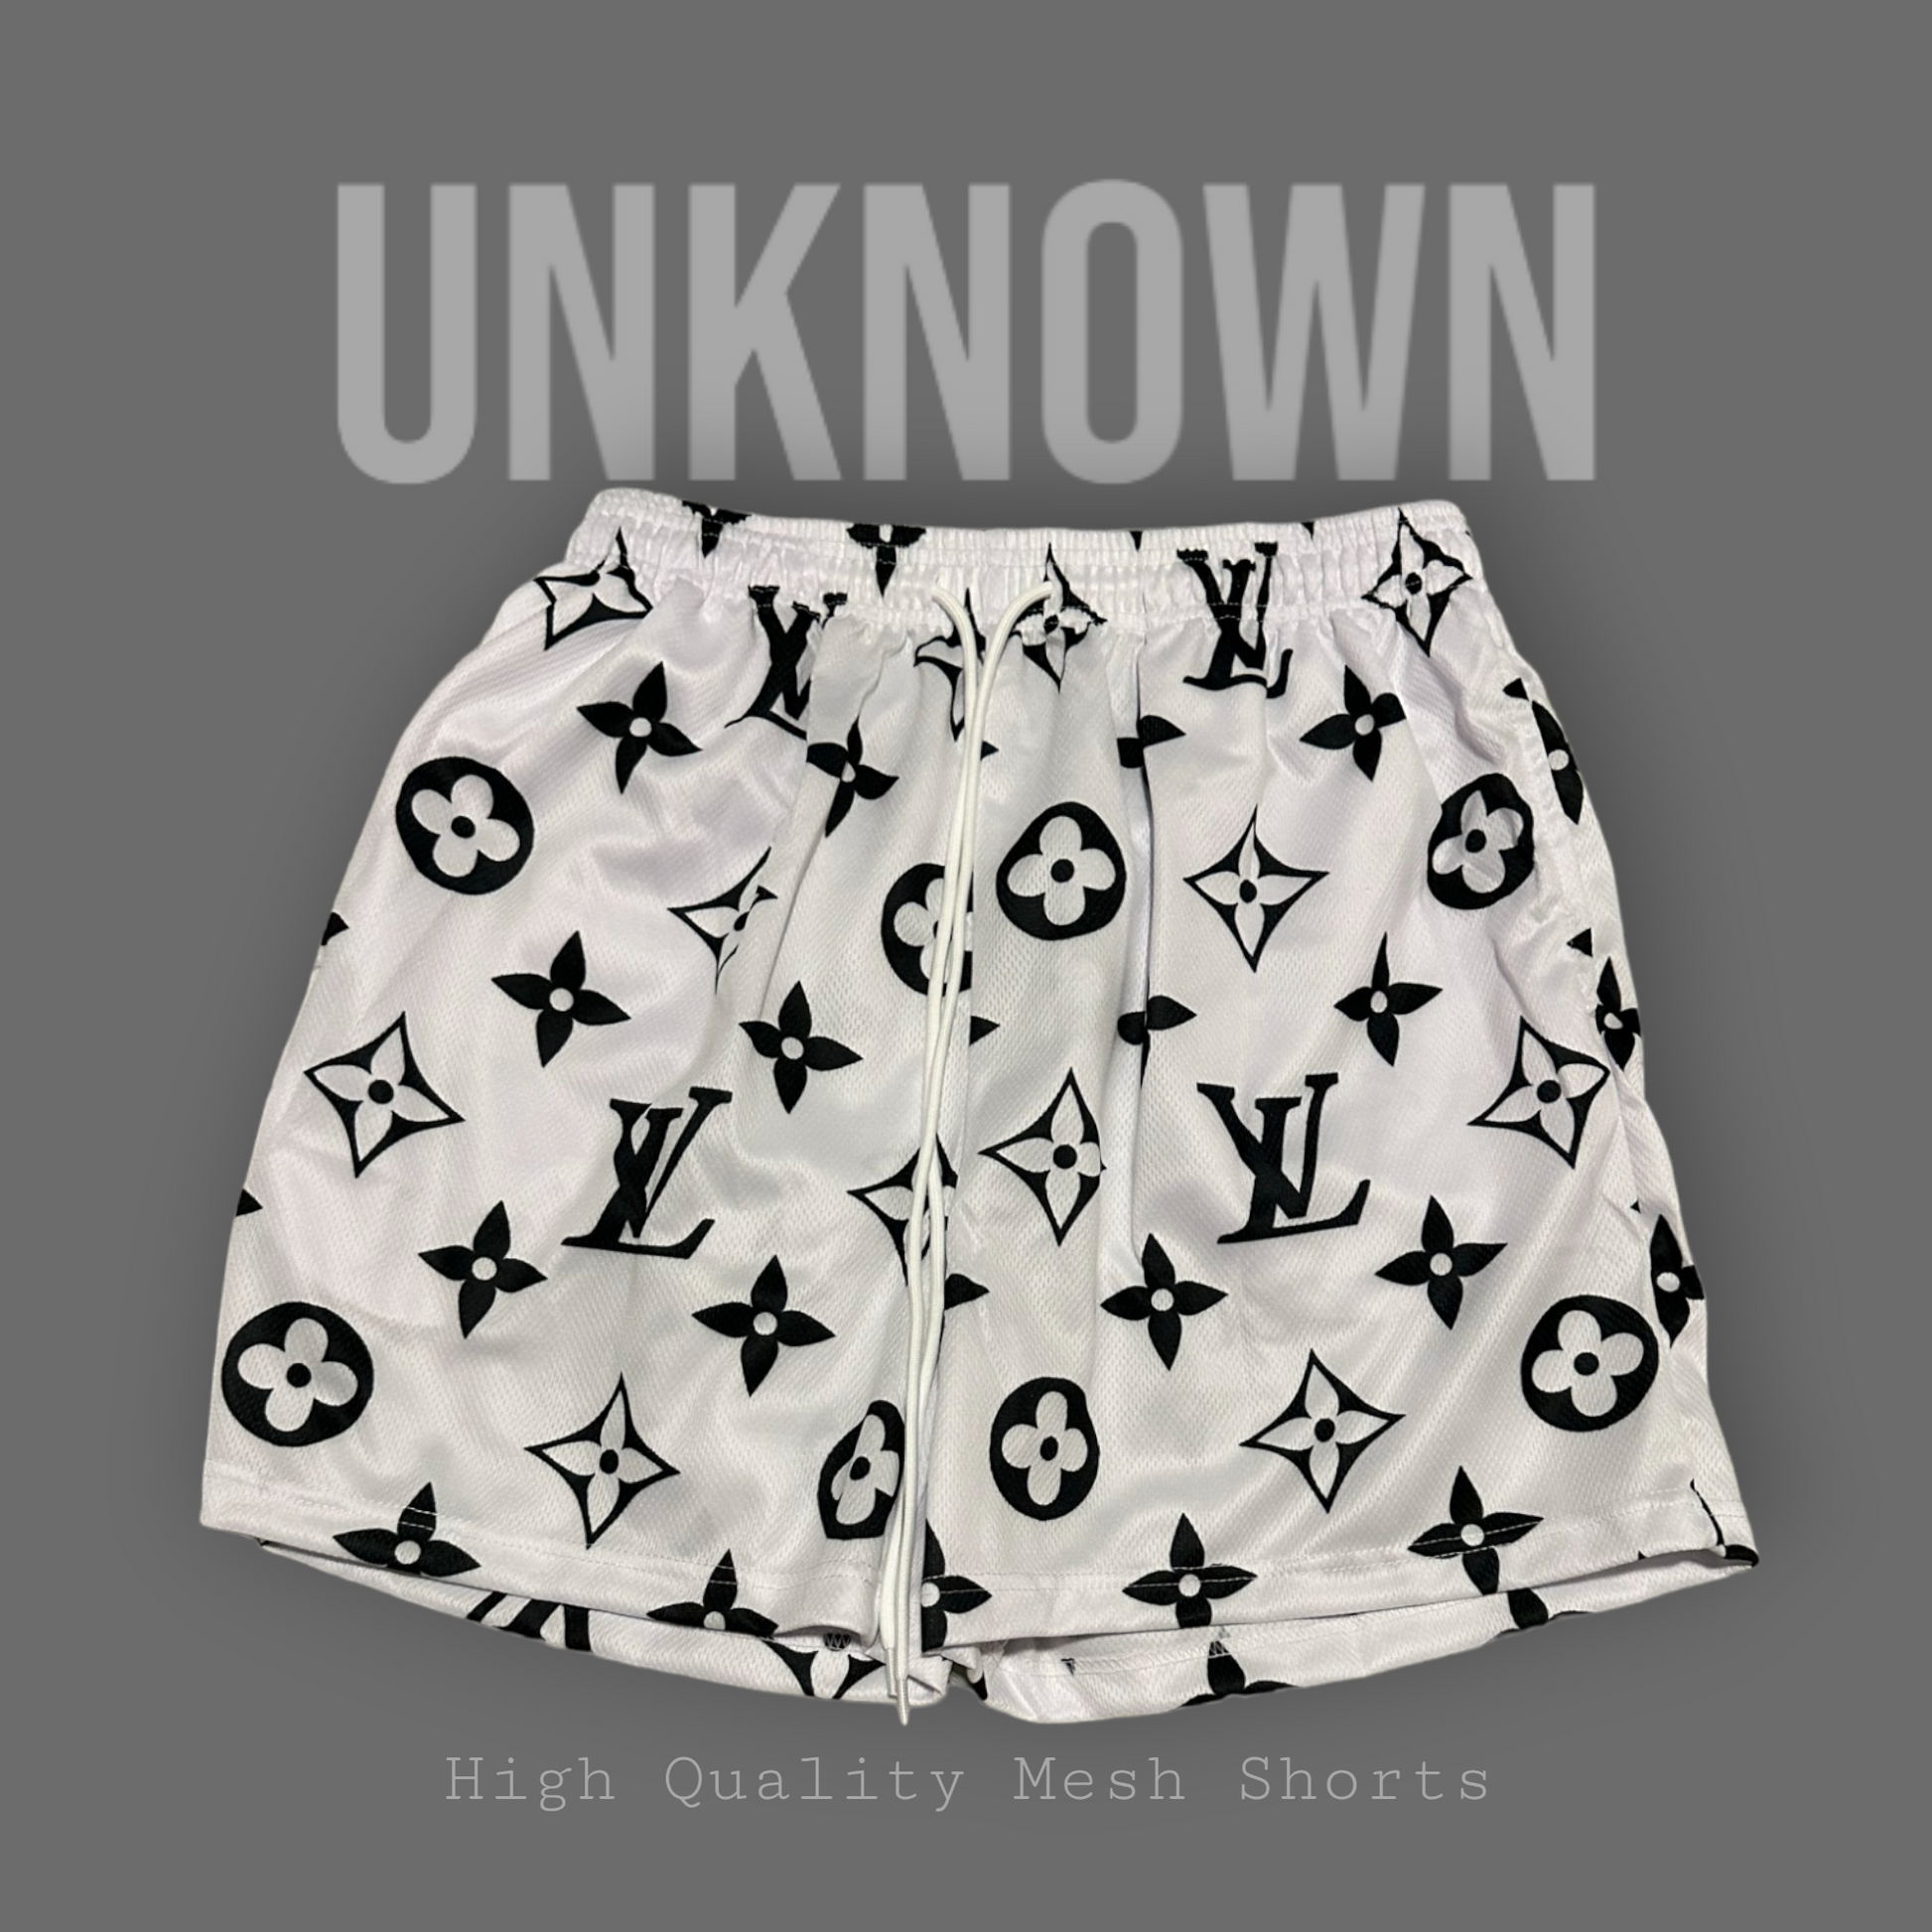 Unknown Mesh Shorts L V White/Black Design